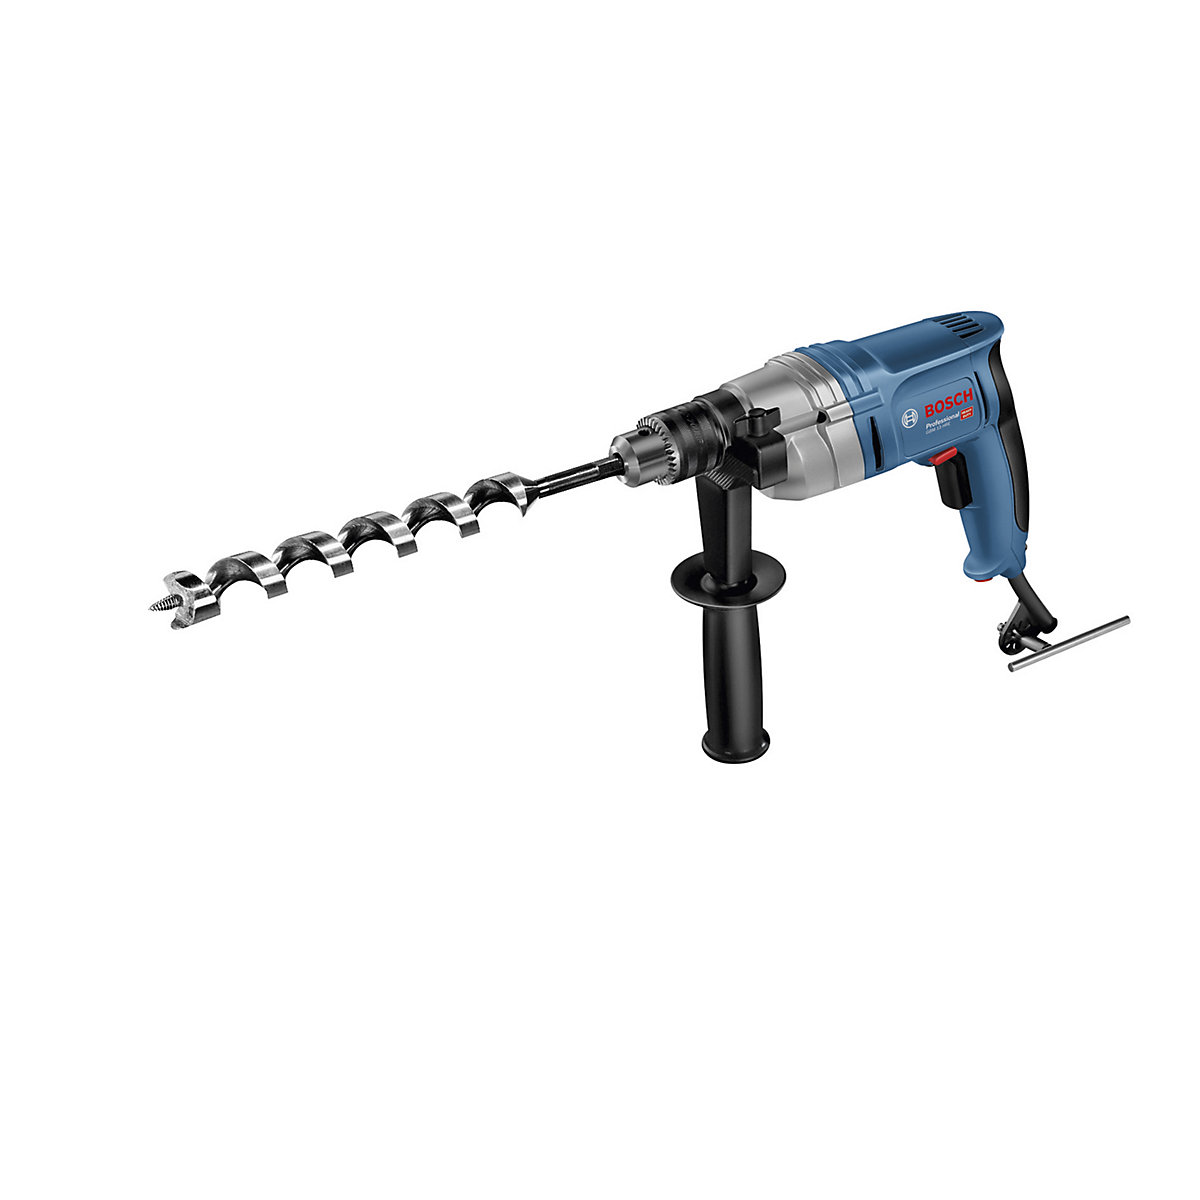 GBM 13 HRE Professional drill – Bosch